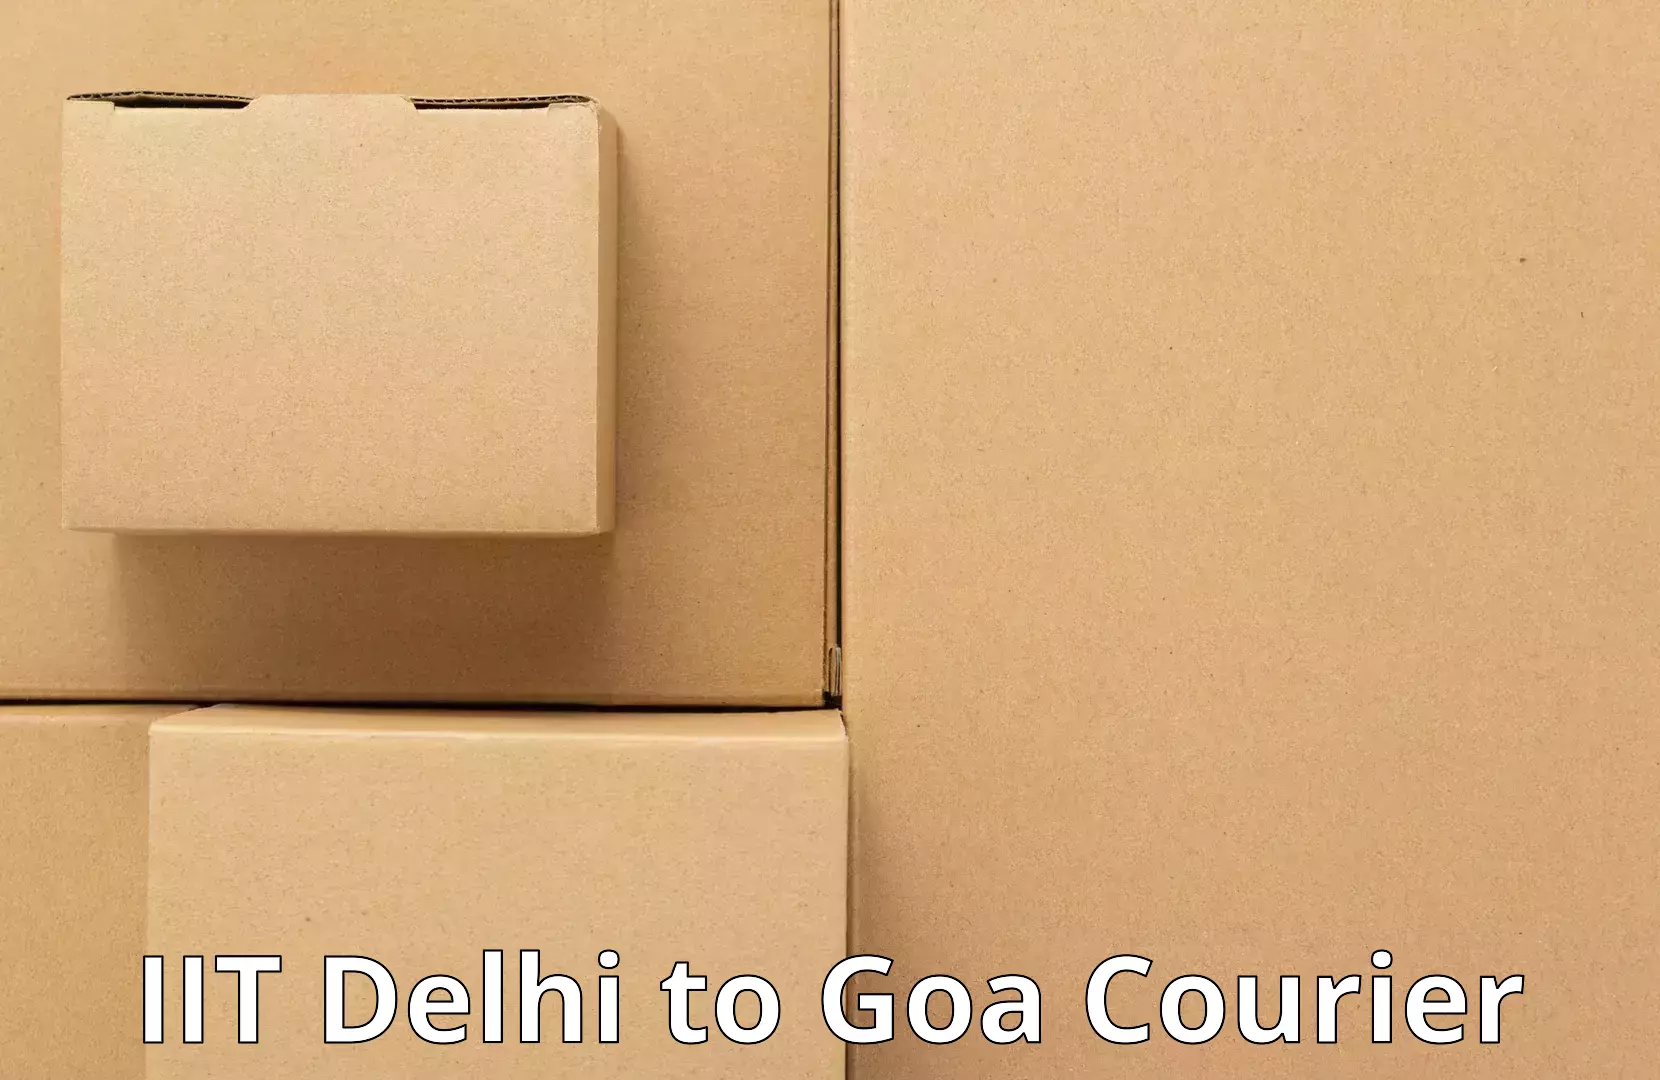 Nationwide household movers IIT Delhi to IIT Goa